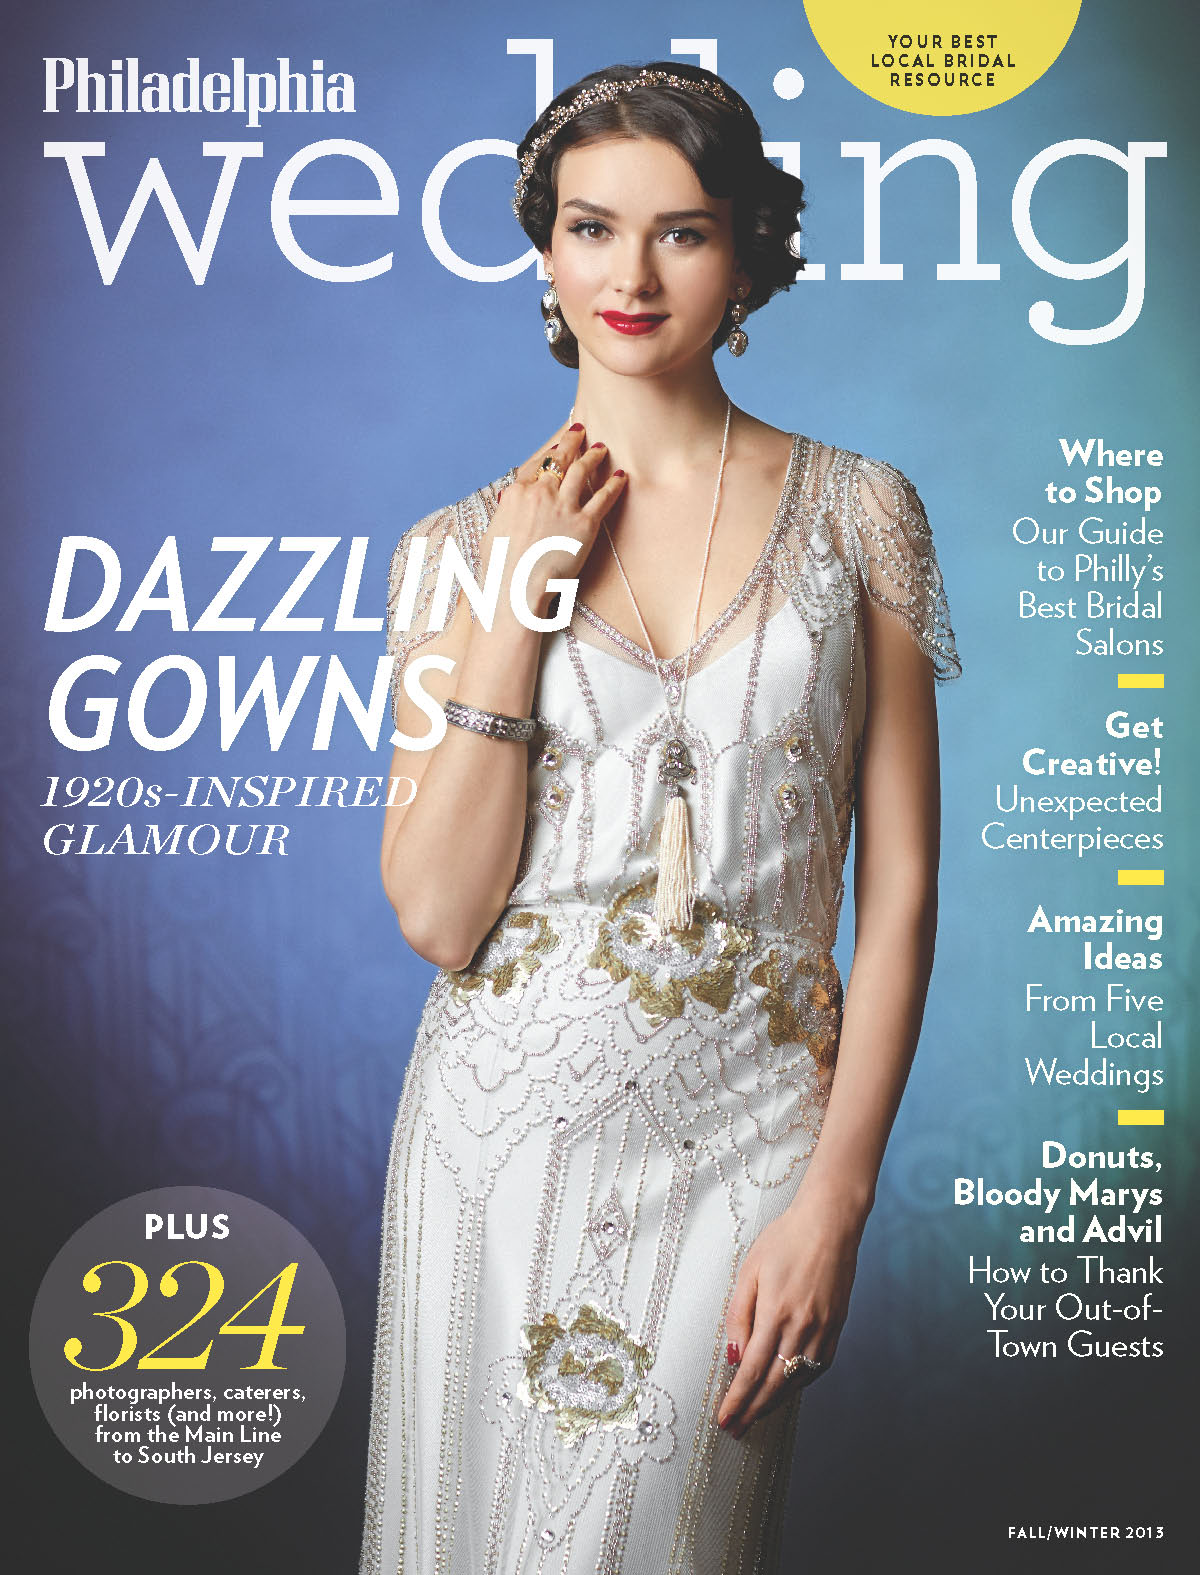 Sneak Peek: Philadelphia Wedding's Fall/Winter 2013 Issue! 